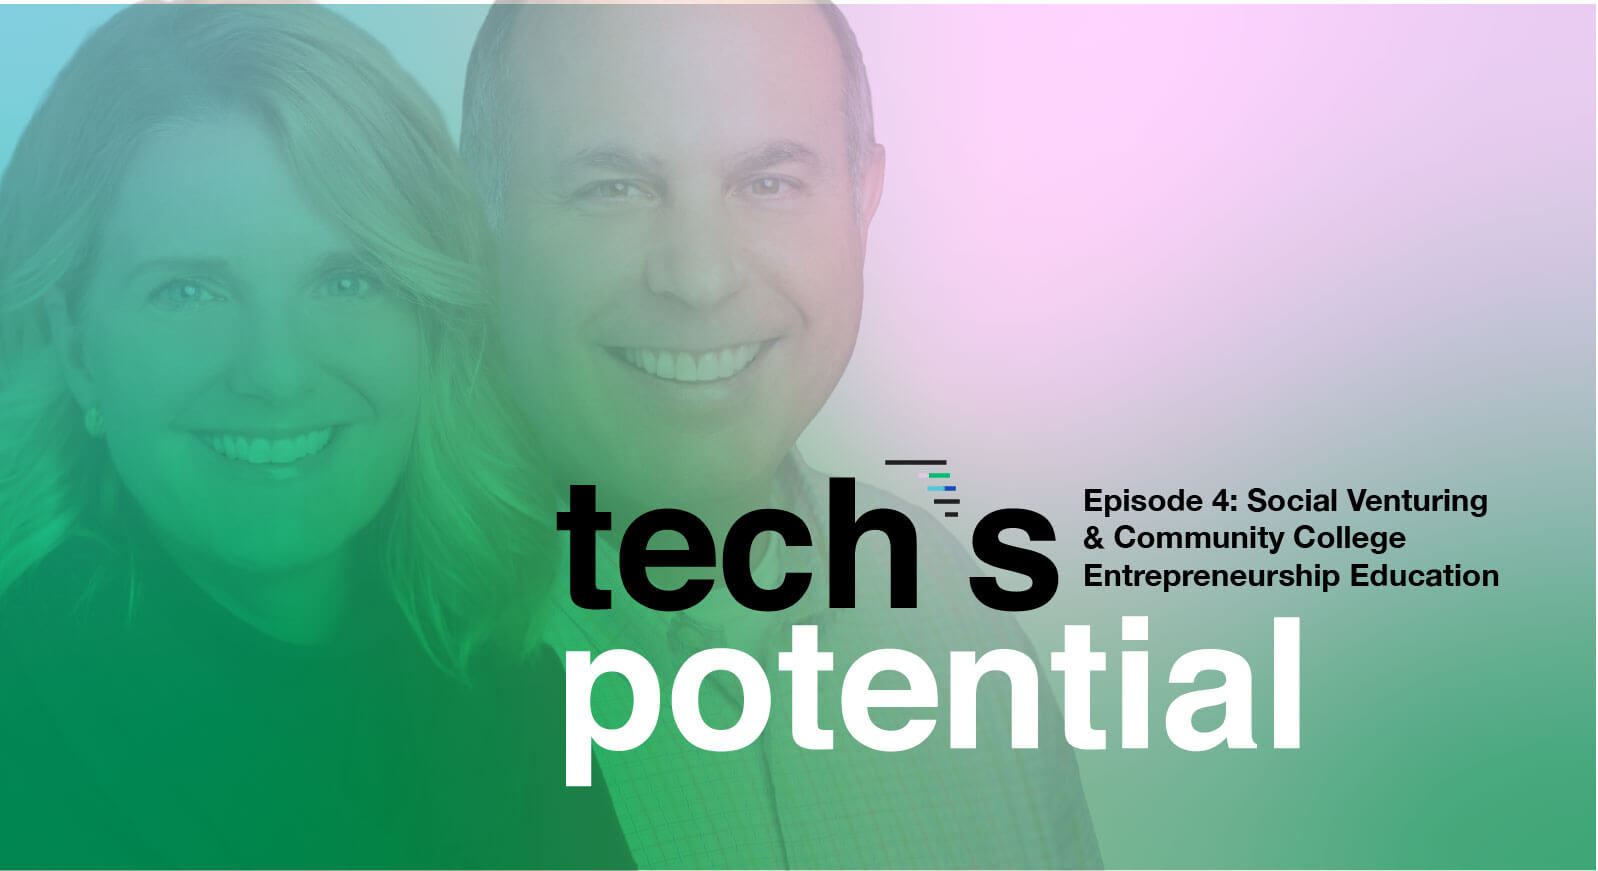 Episode 4 - Tech's Potential podcast from Florida High Tech Corridor